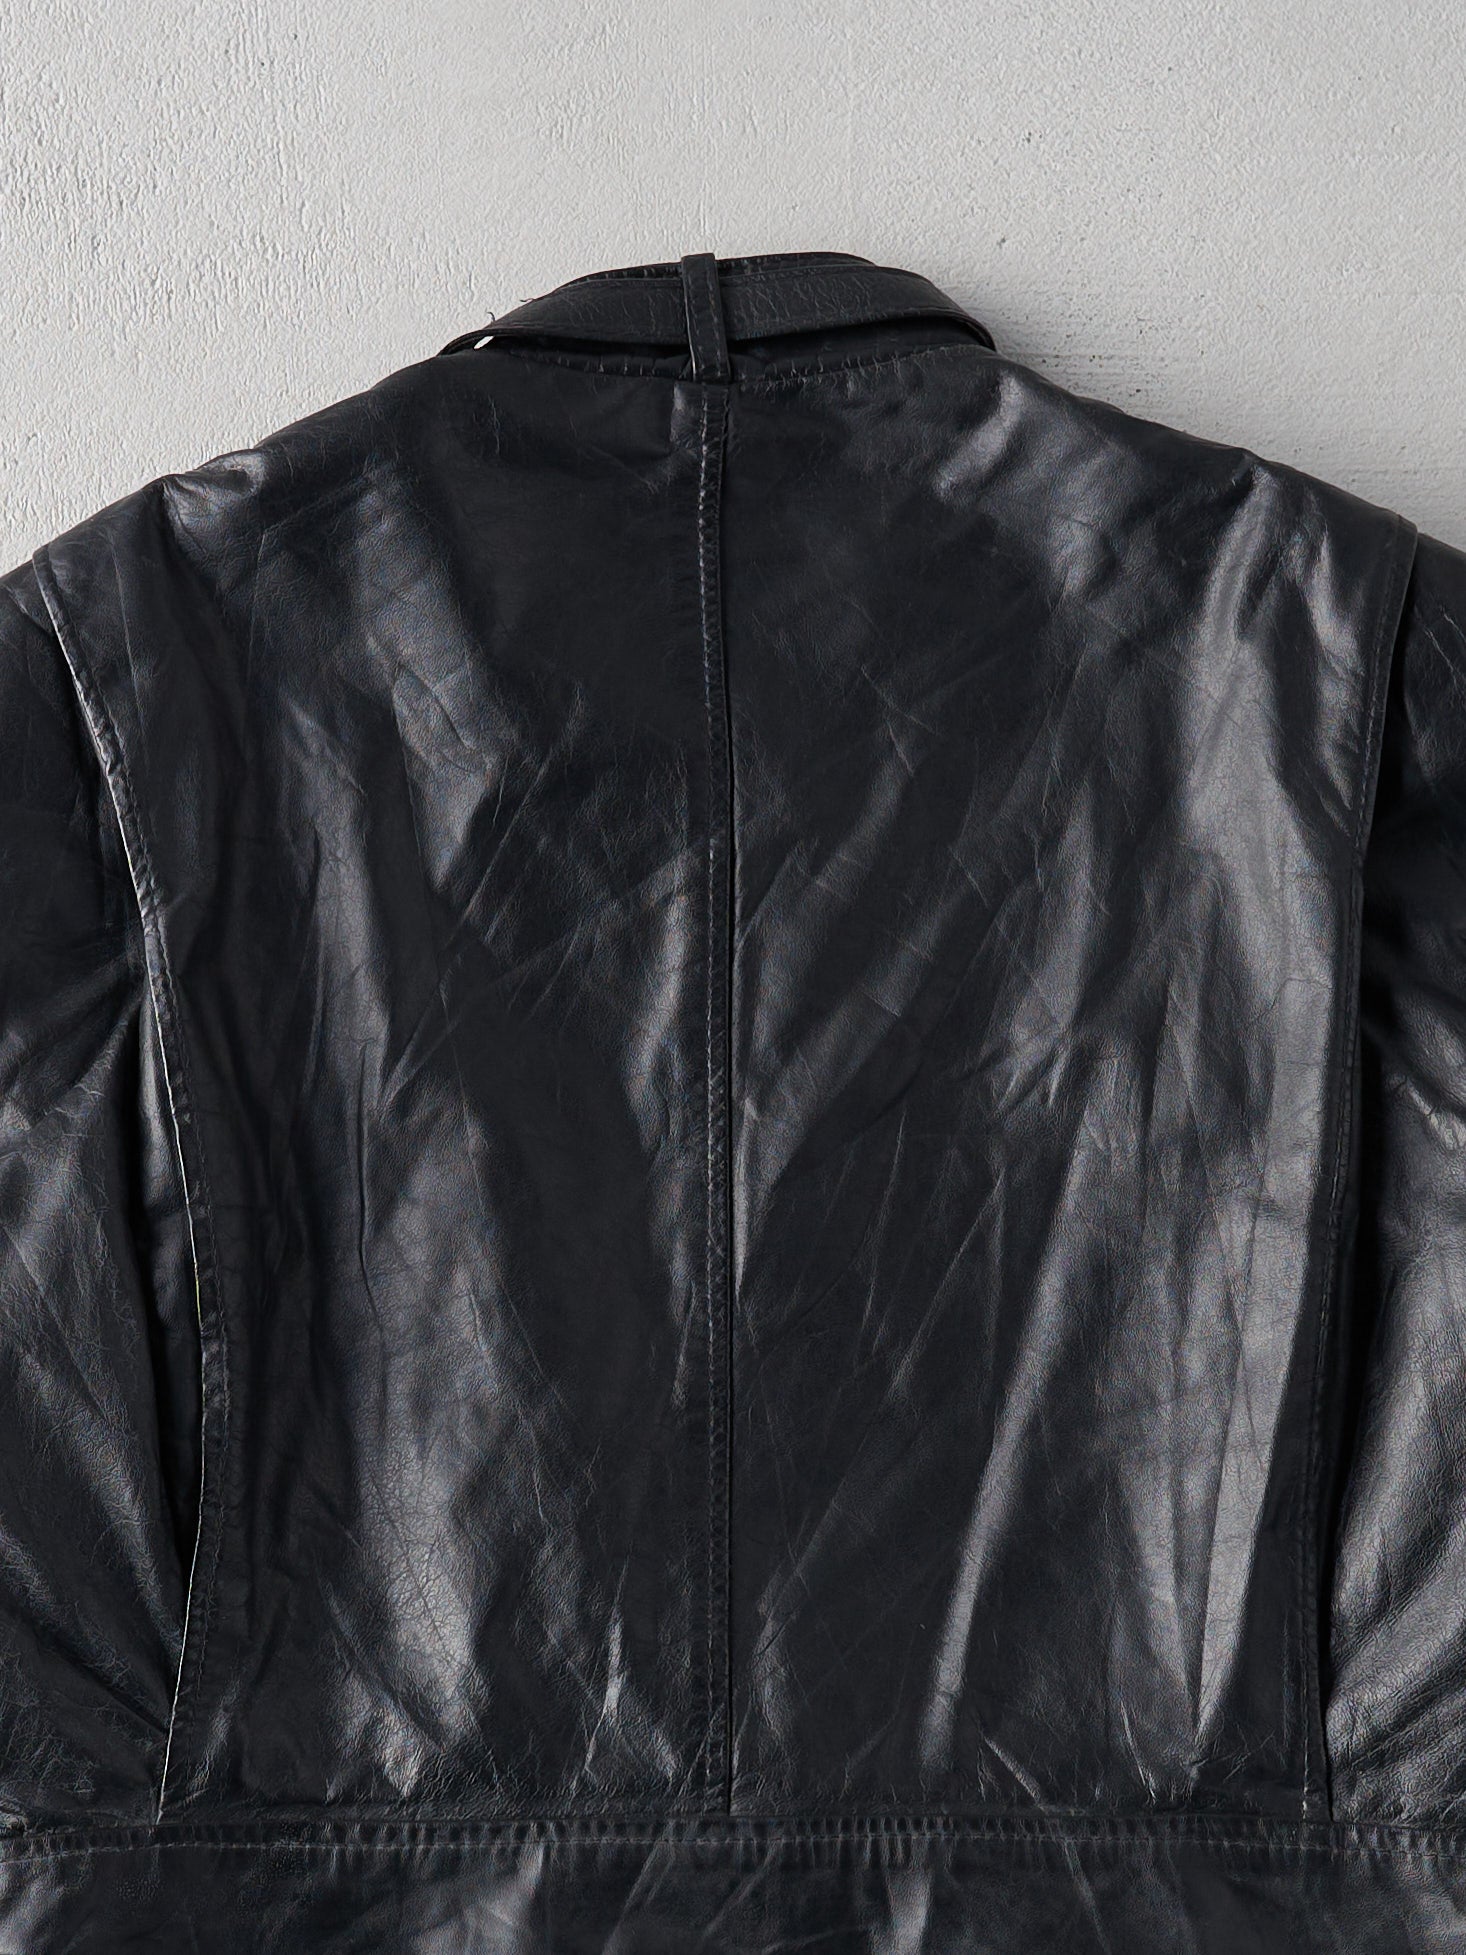 Vintage 80s Black Leather Biker Jacket (M)